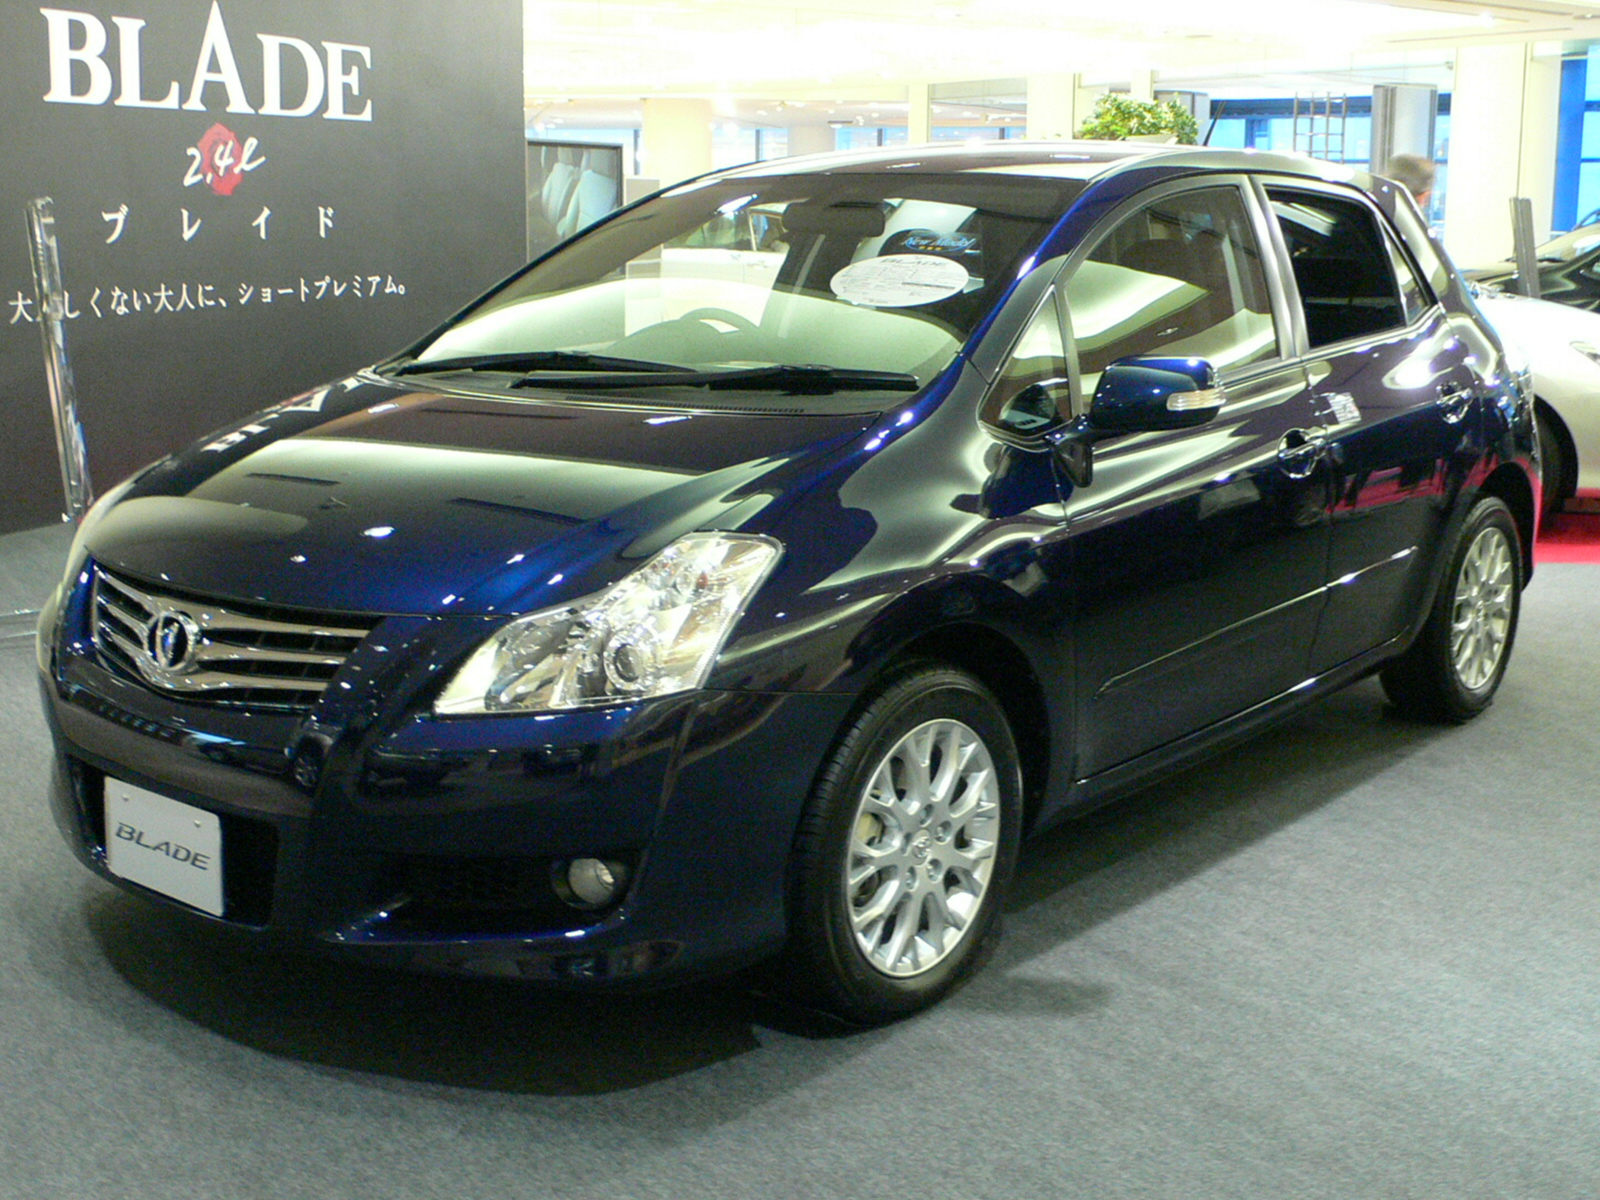 Toyota Blade 2009 - 2012 Hatchback 5 door #3